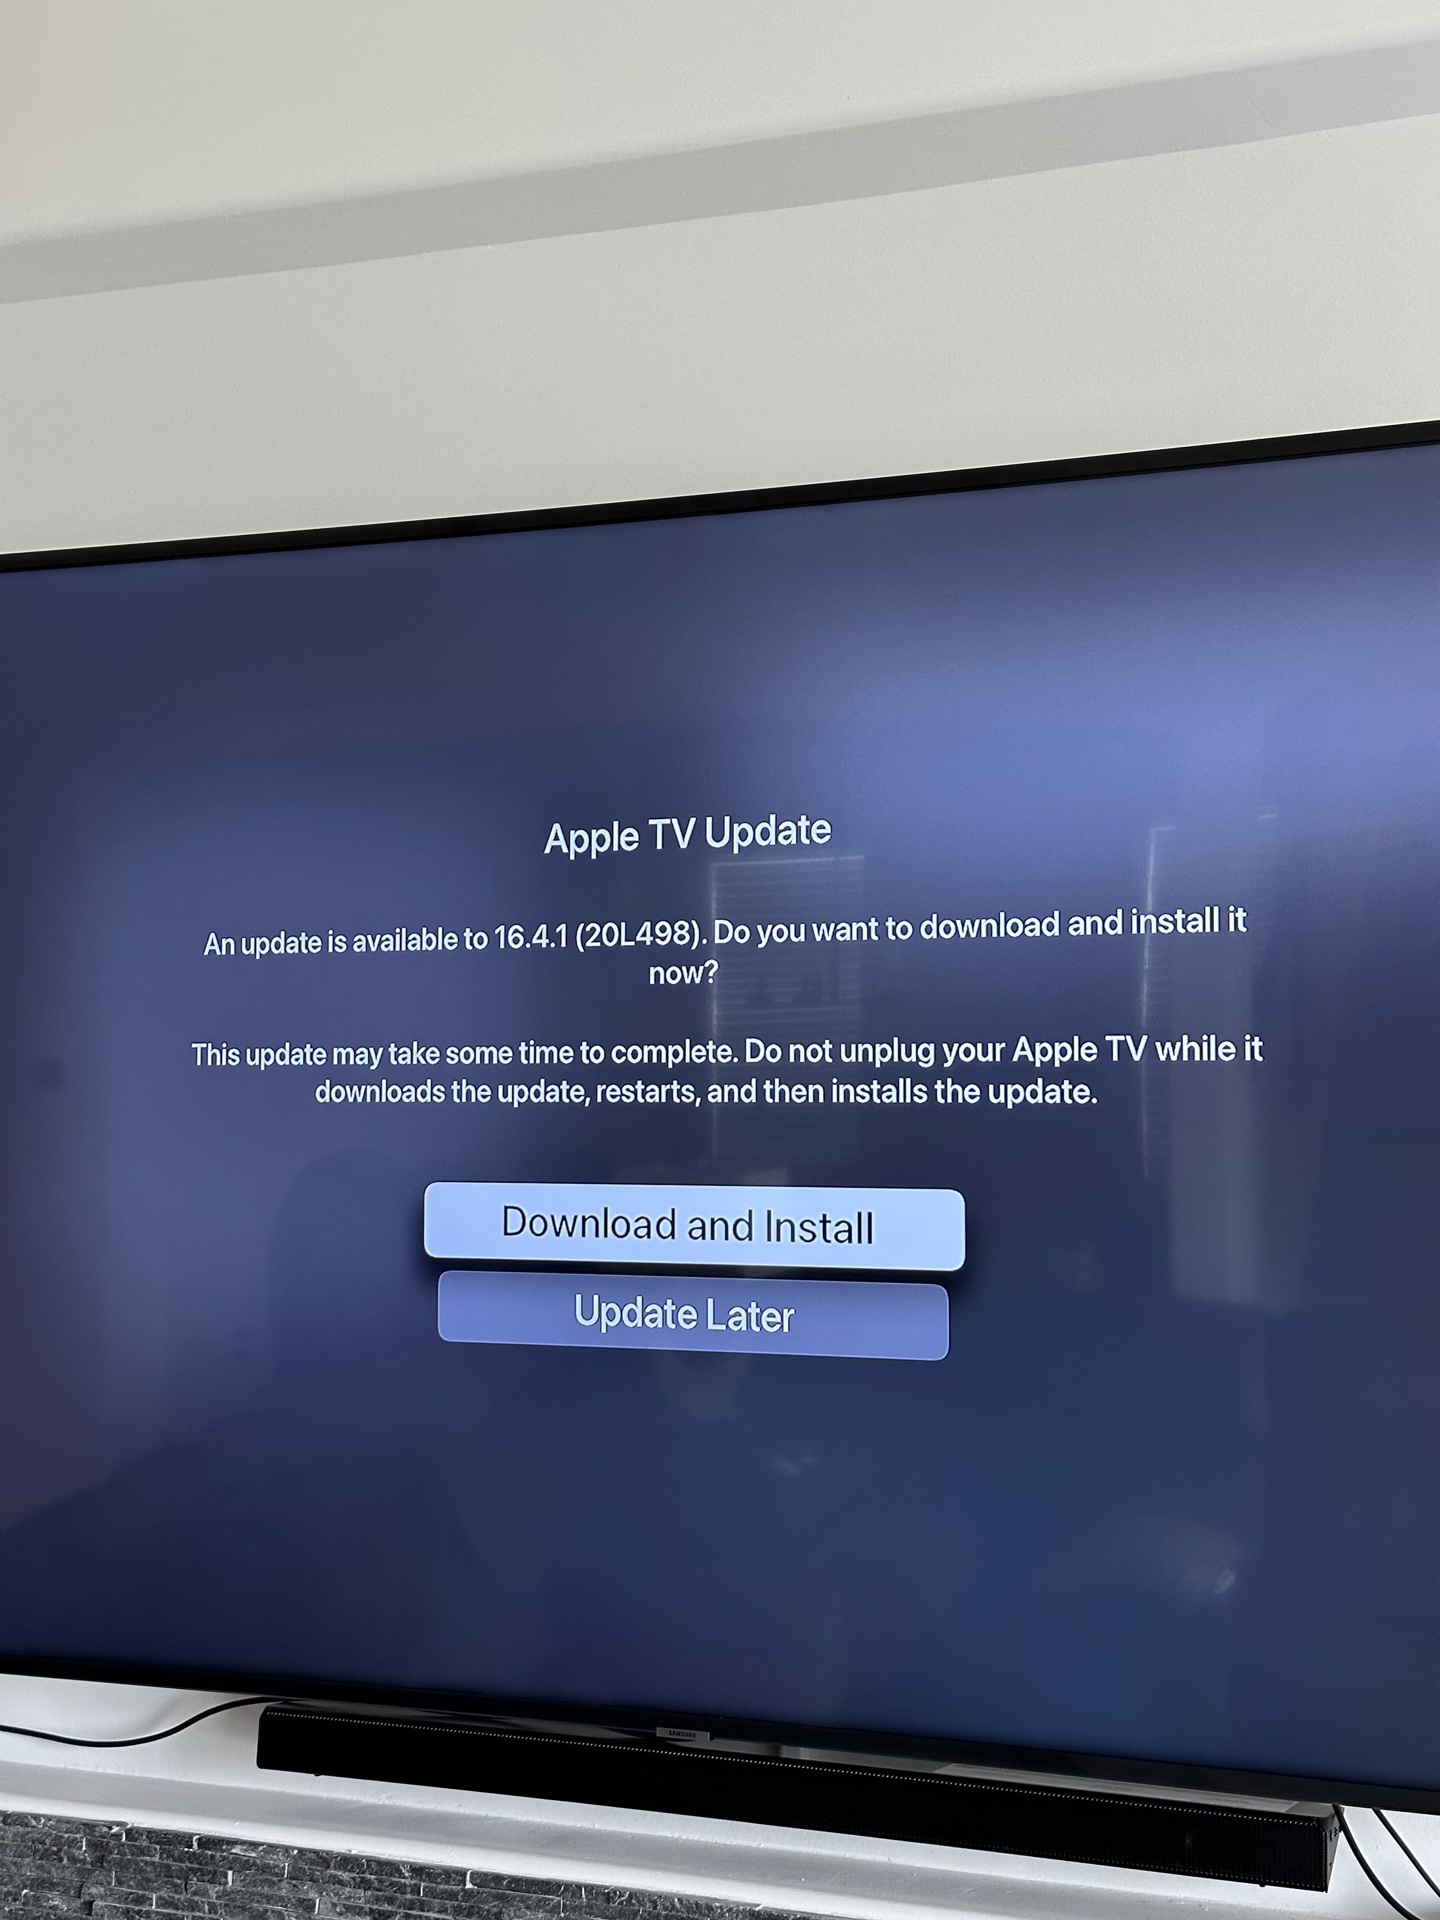 苹果发布 tvOS 和 HomePod 16.4.1 更新